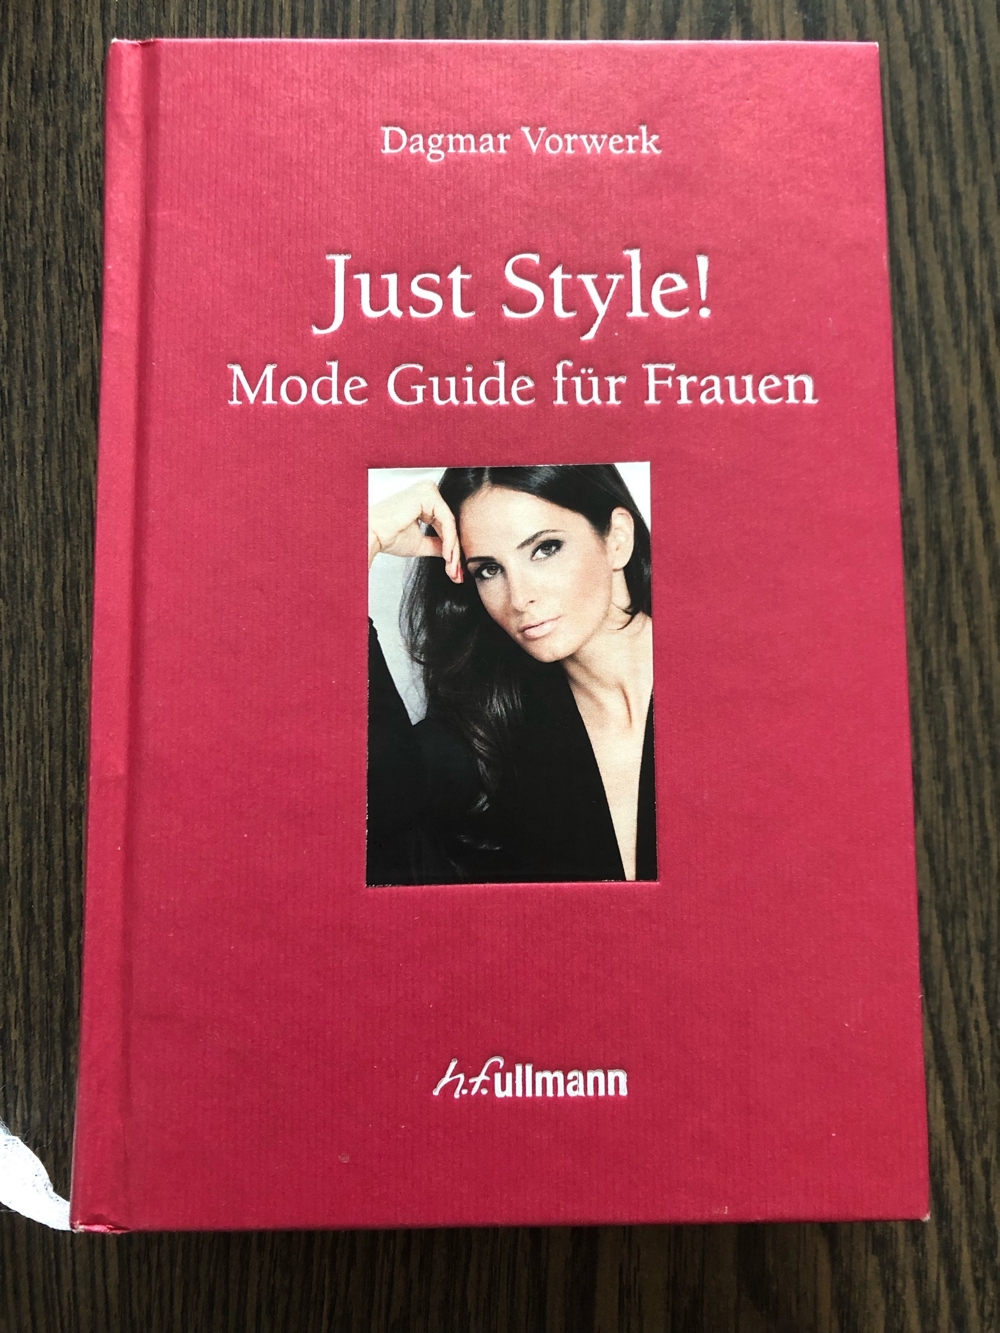 Just Style! Mode Guide für Frauen